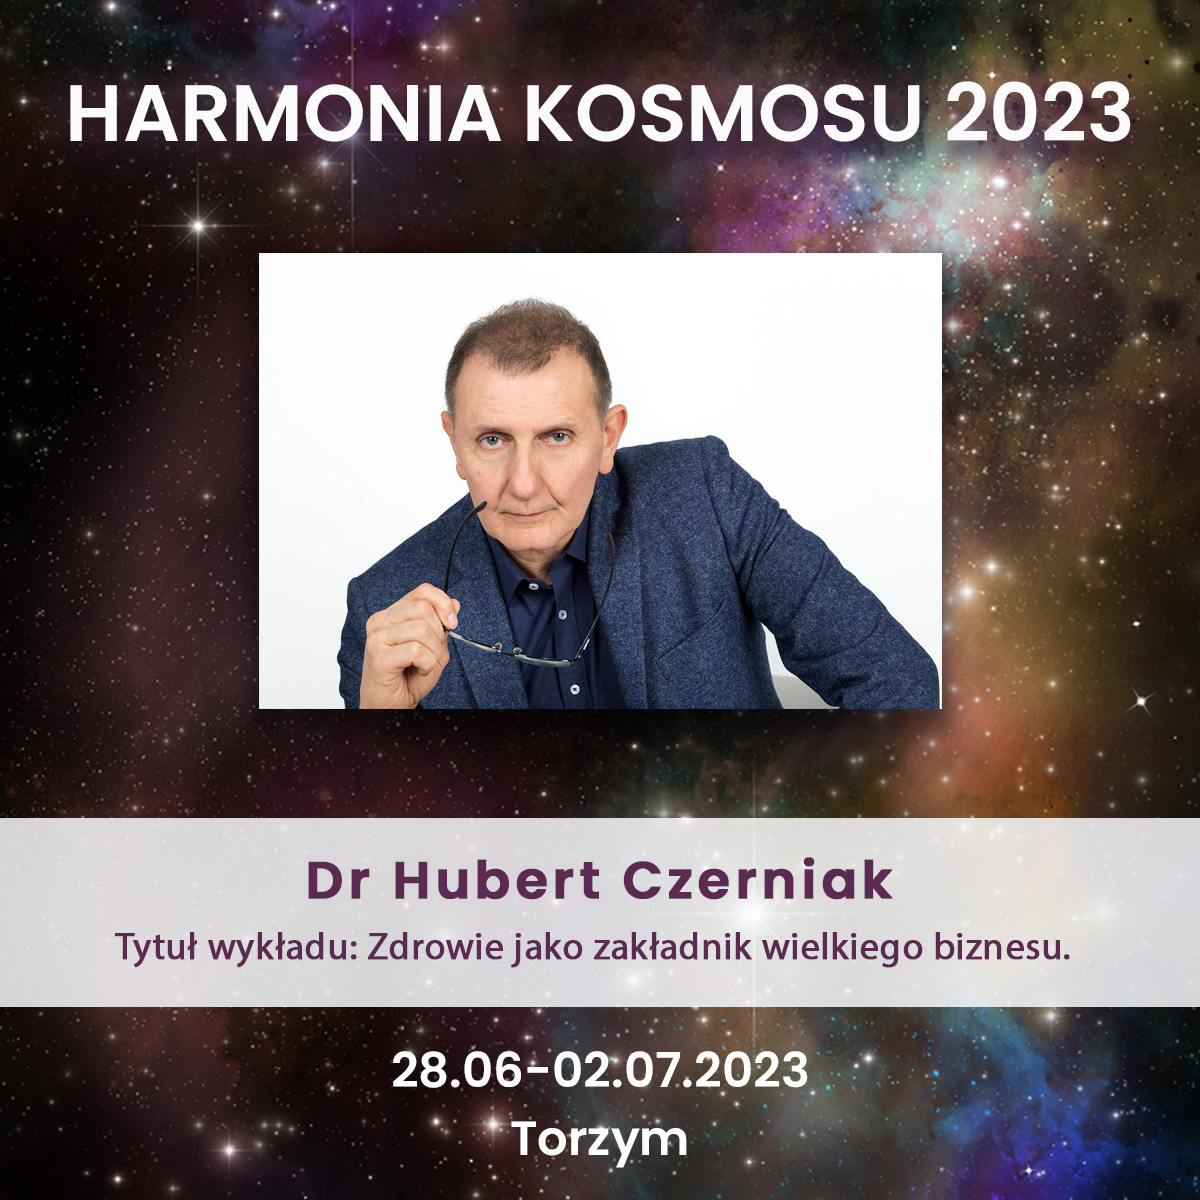 Dr Hubert Czerniak